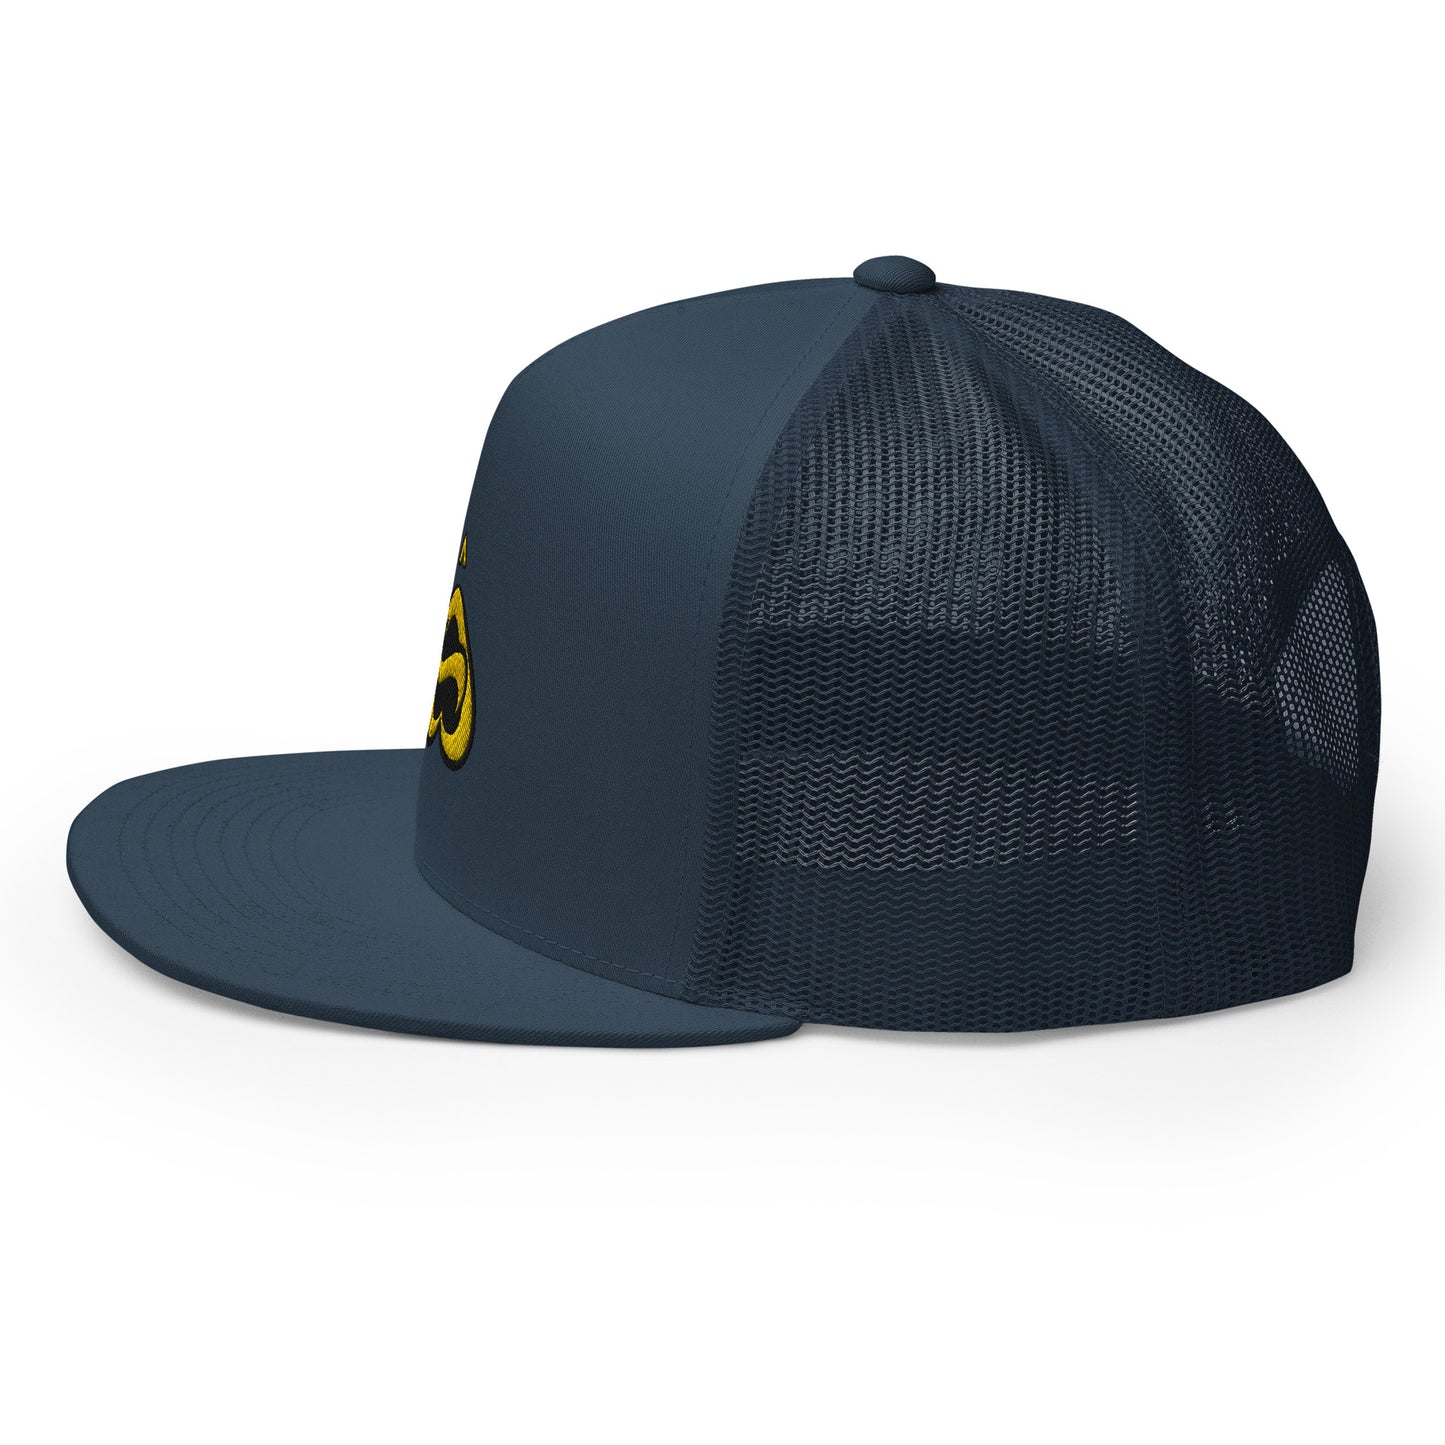 Binhi "Navy" Trucker hat